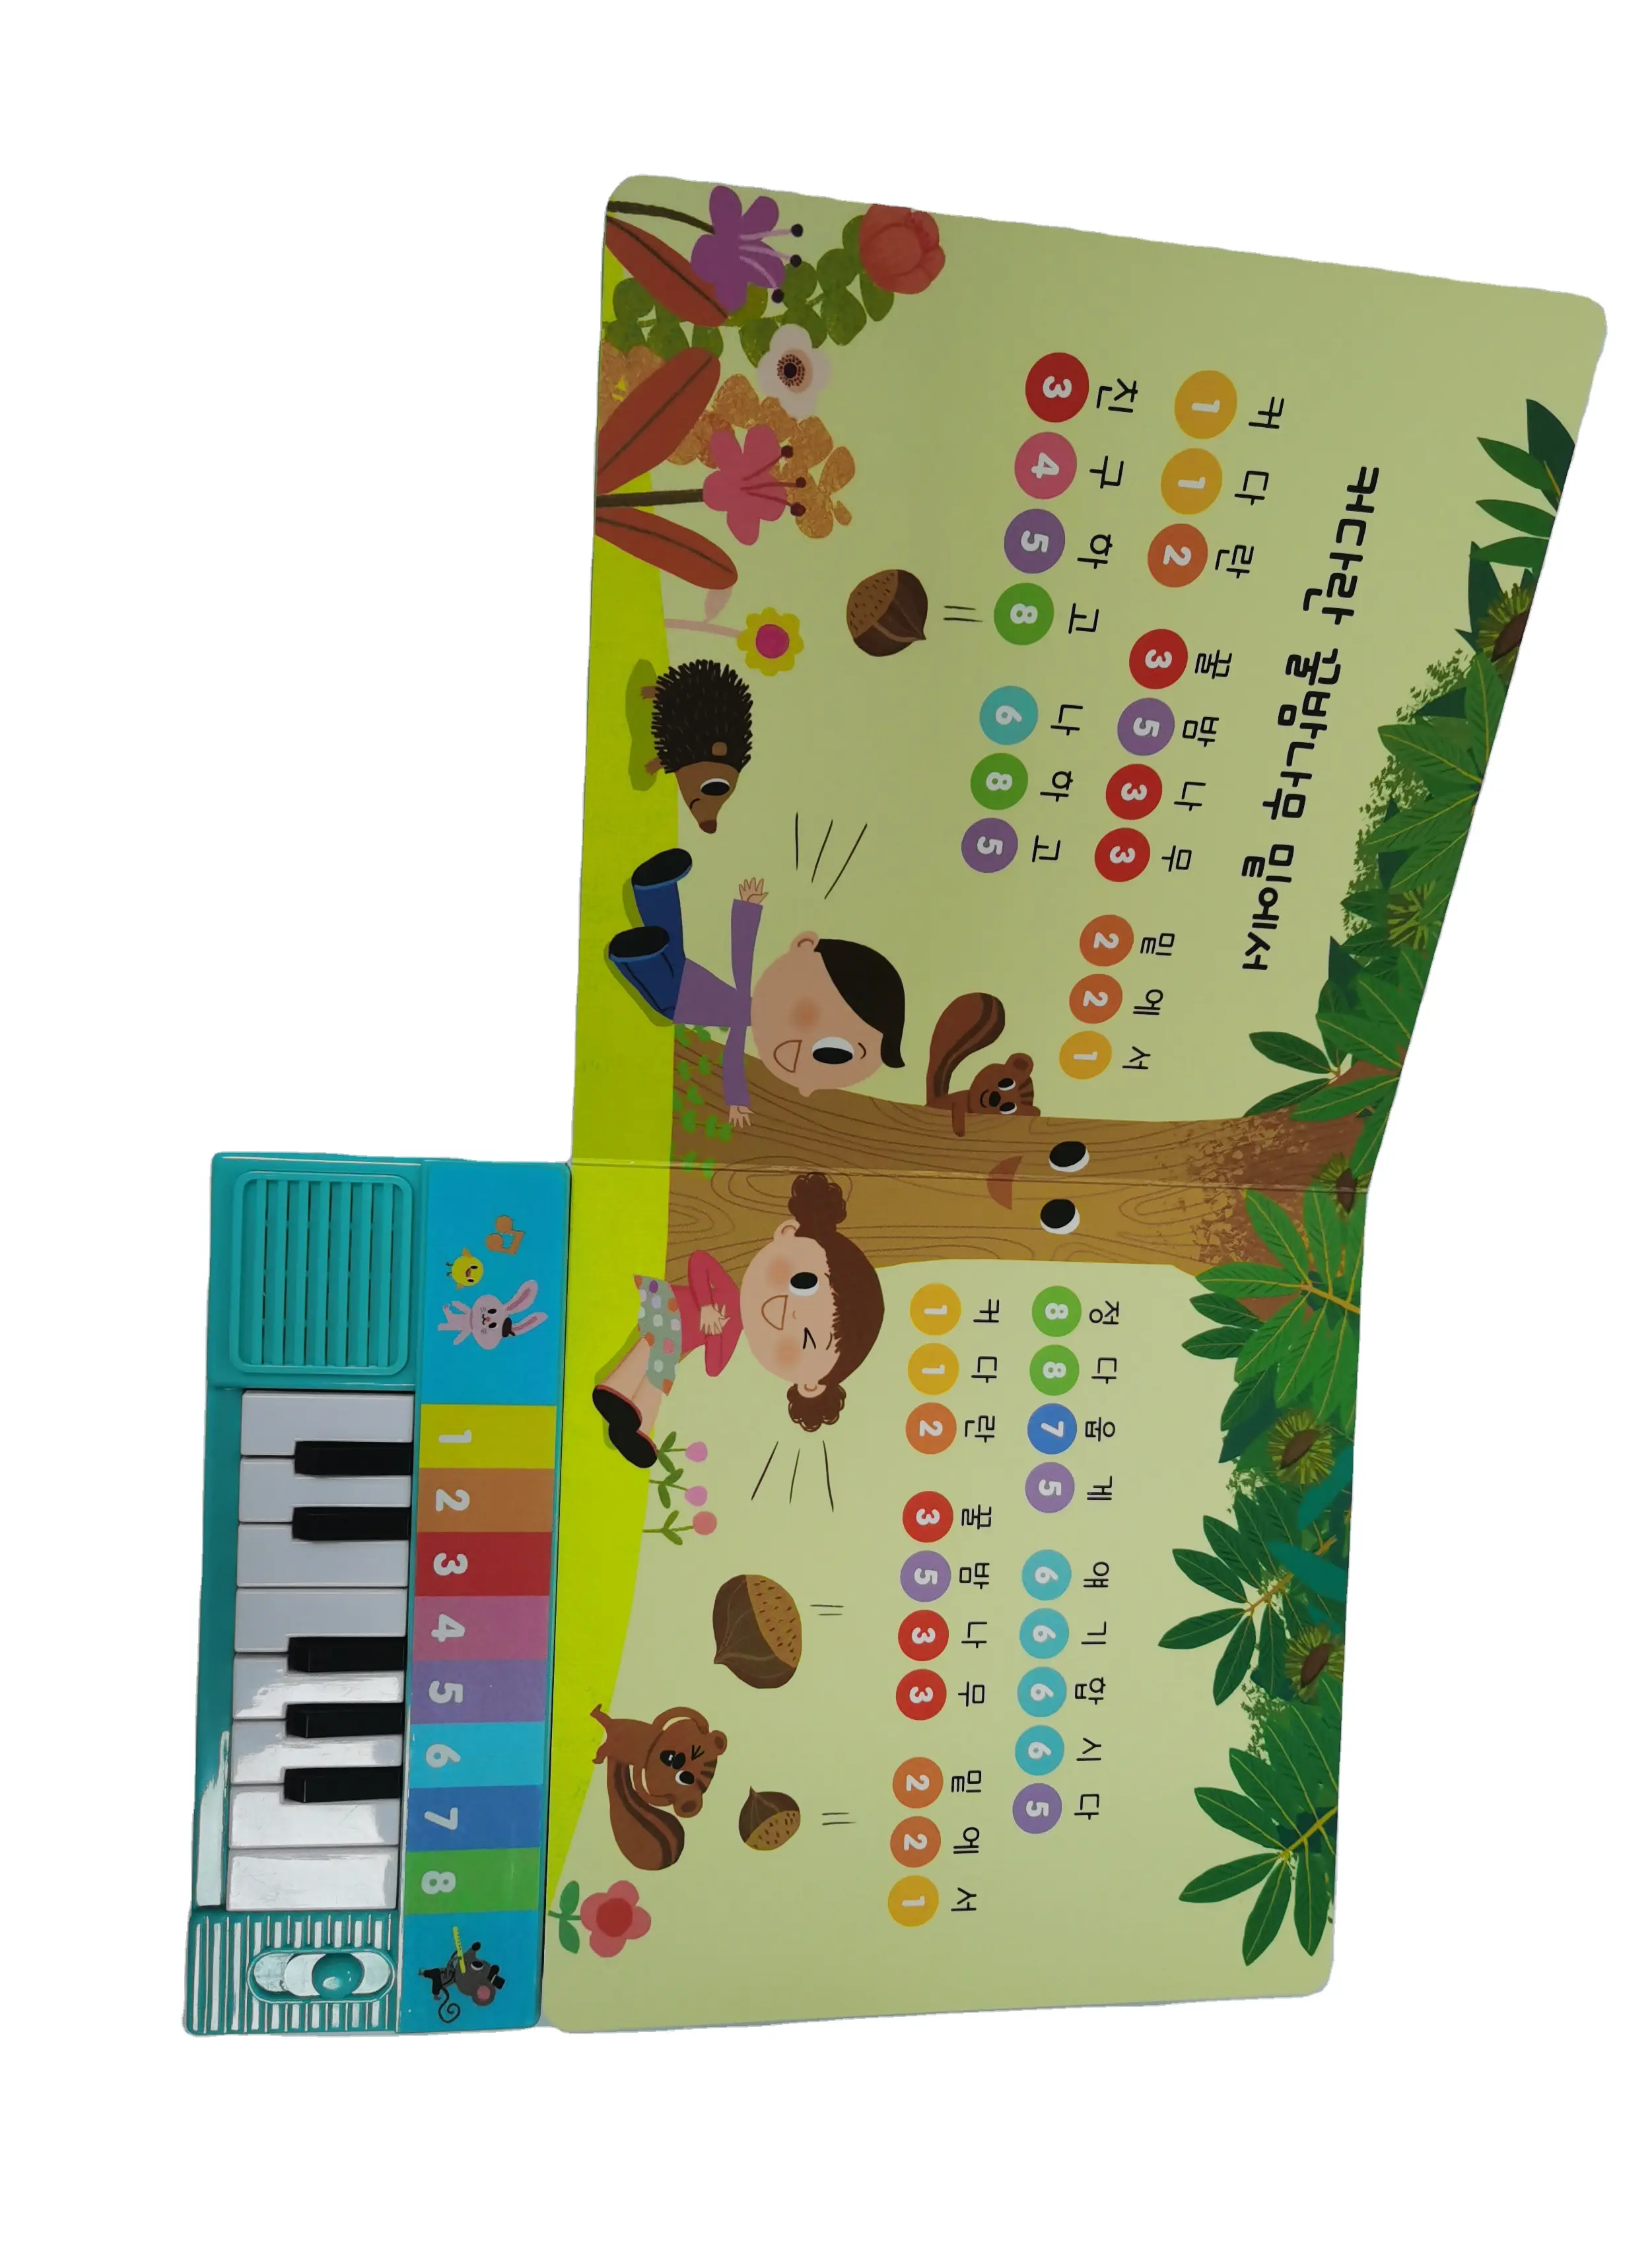 Keyboard musik edukasi interaktif terbaru, buku Piano suara elektronik